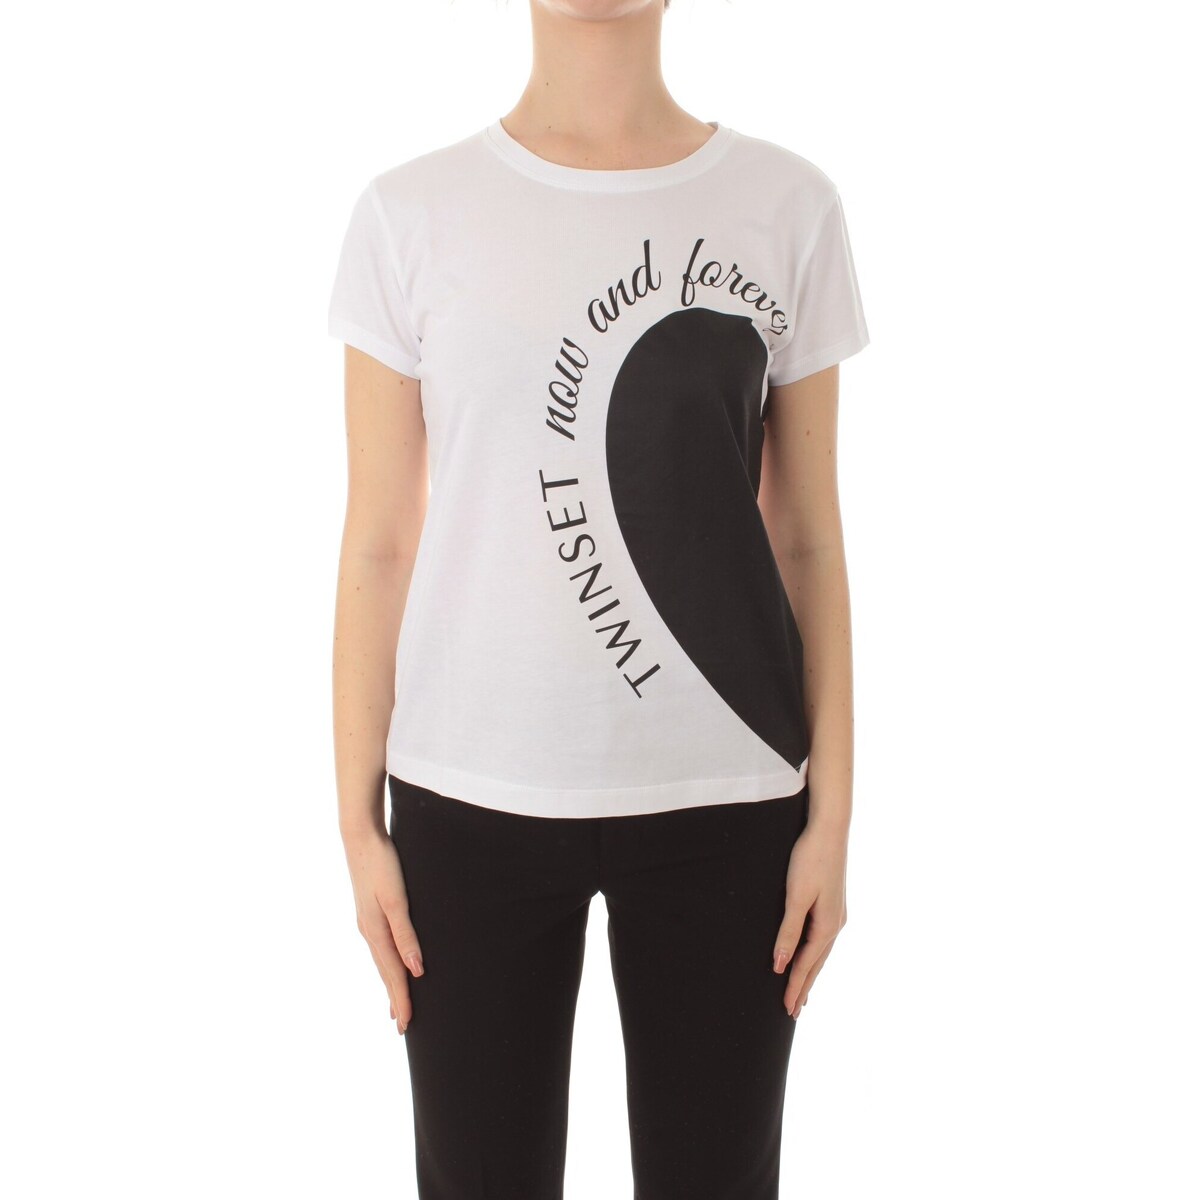 Abbigliamento Donna T-shirt maniche corte Twin Set 241TP2701 Bianco